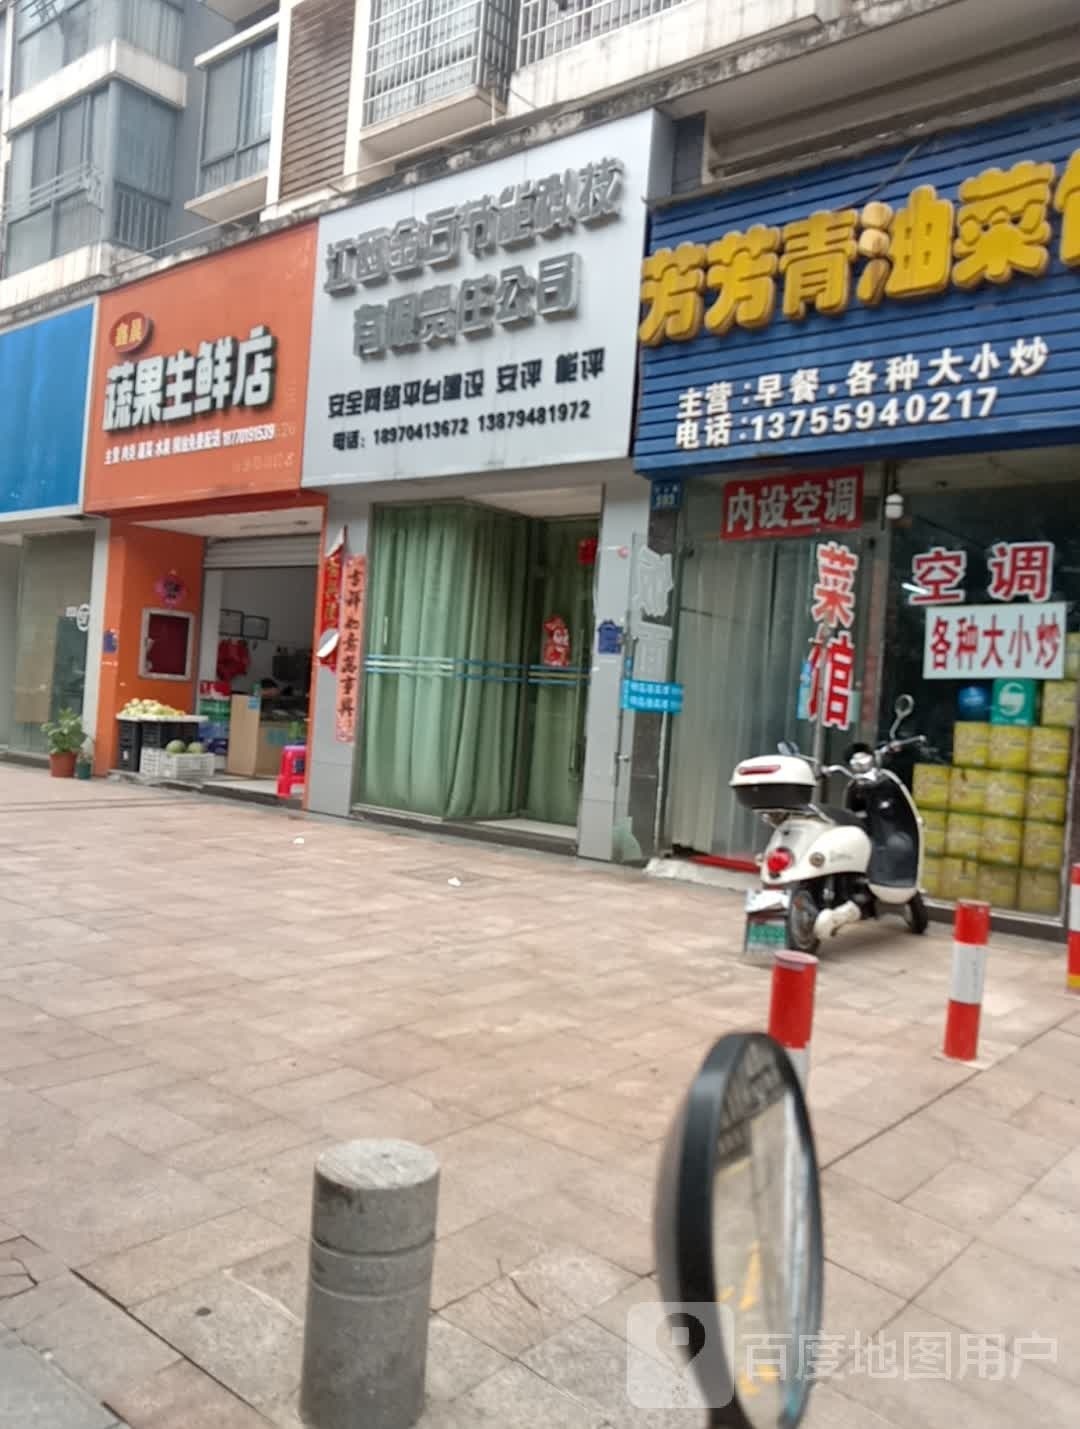 鑫晨蔬果生鲜店